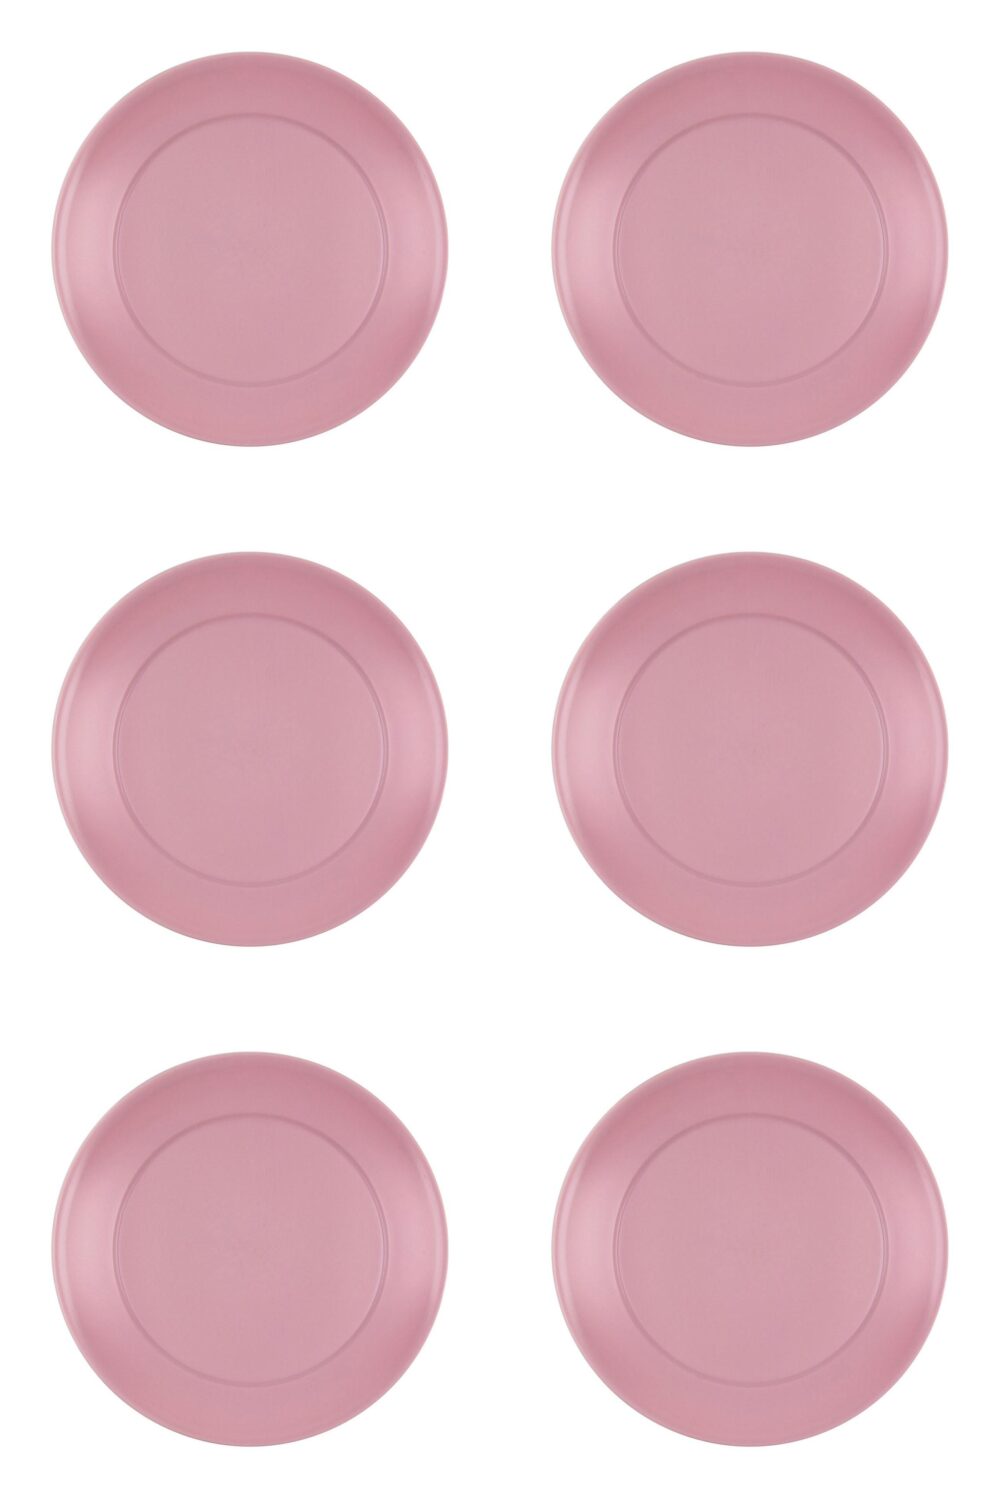 Set farfurii 6 piese pentru fructe, din plastic, culoare roz pudrat, diametru 20 cm